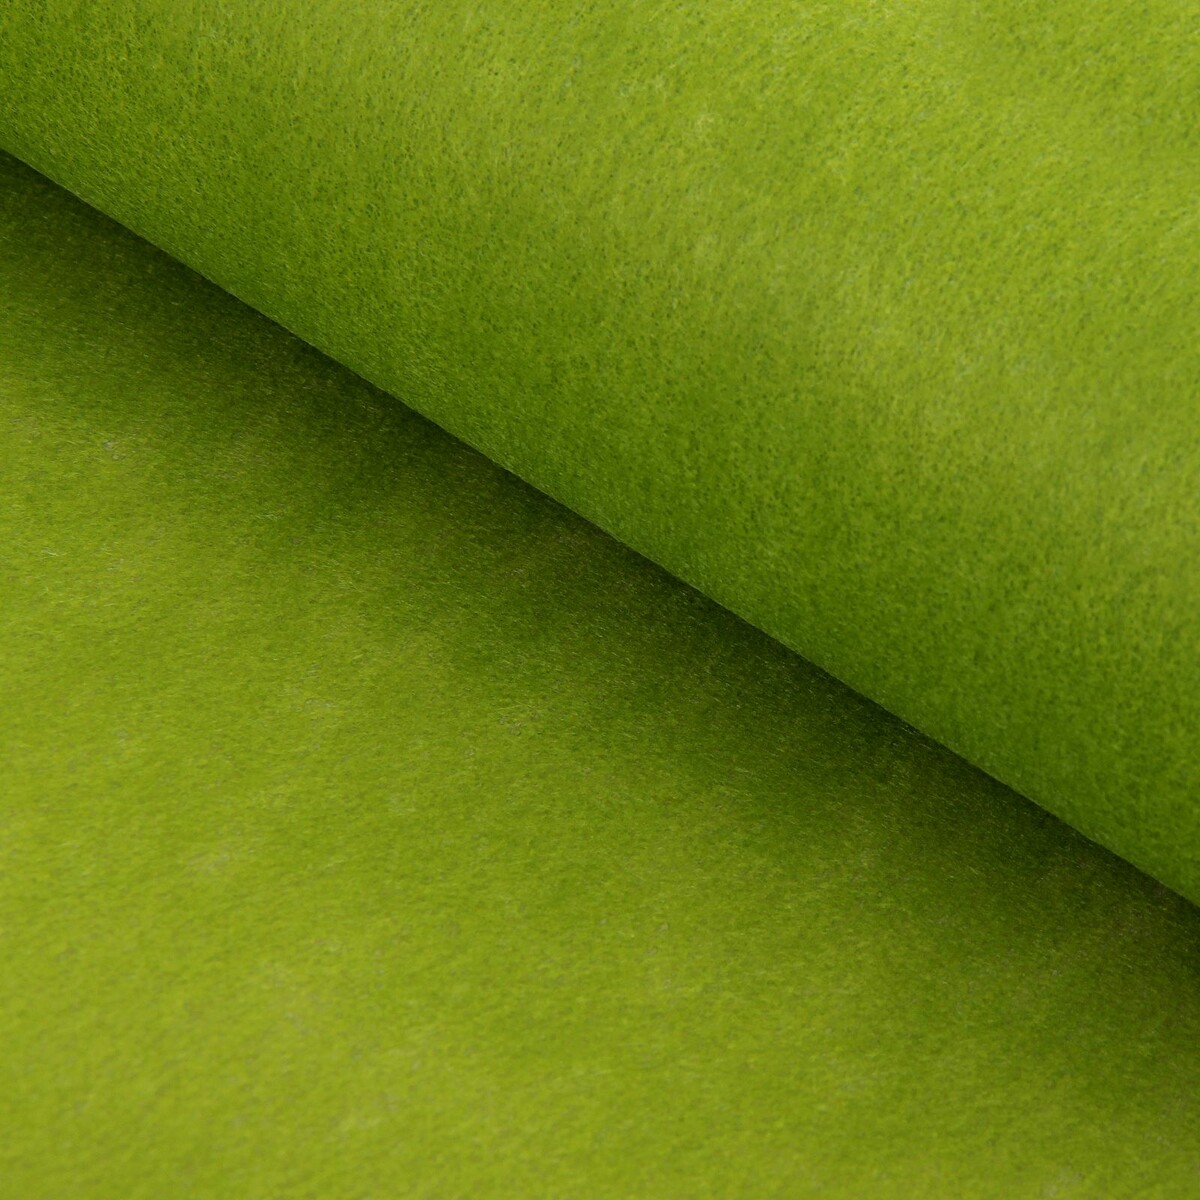 Фетр для упаковок и поделок, однотонный, оливковый, двусторонний, зеленый, рулон 1шт., 50 см x 15 м мяч для художественной гимнастики однотонный d19см torres пвх ag 19 05 зеленый